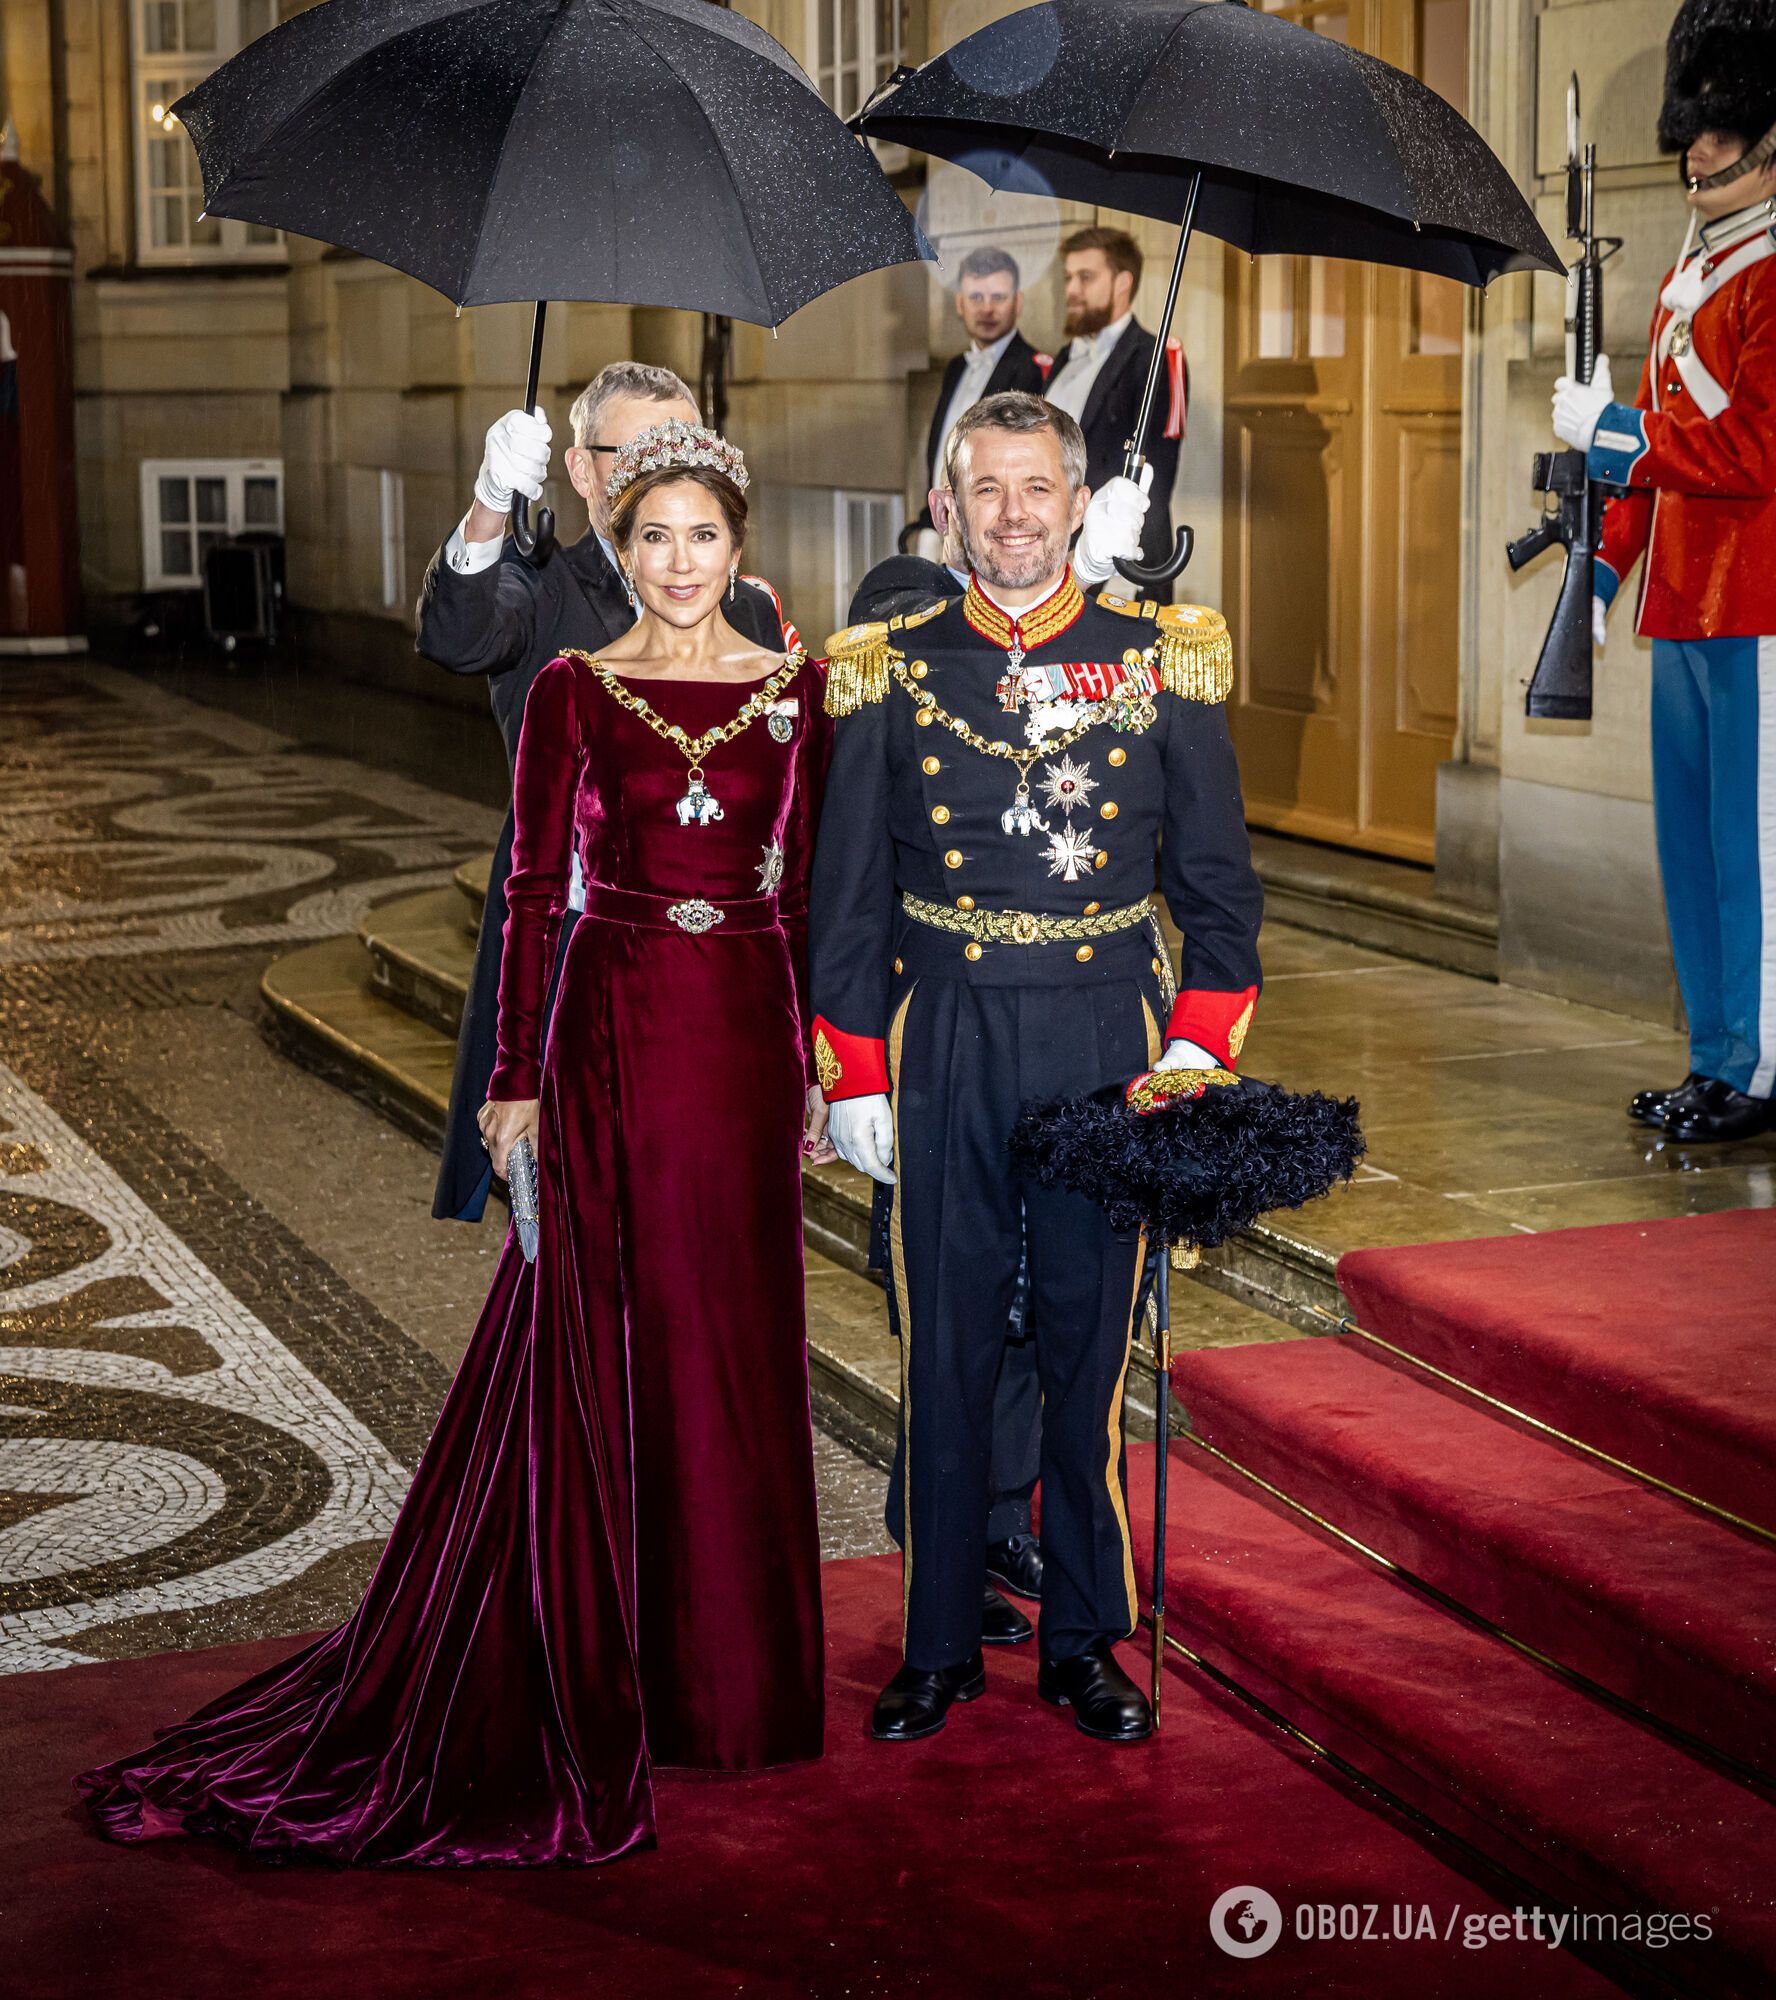 Опубликован первый официальный портрет короля и королевы Дании